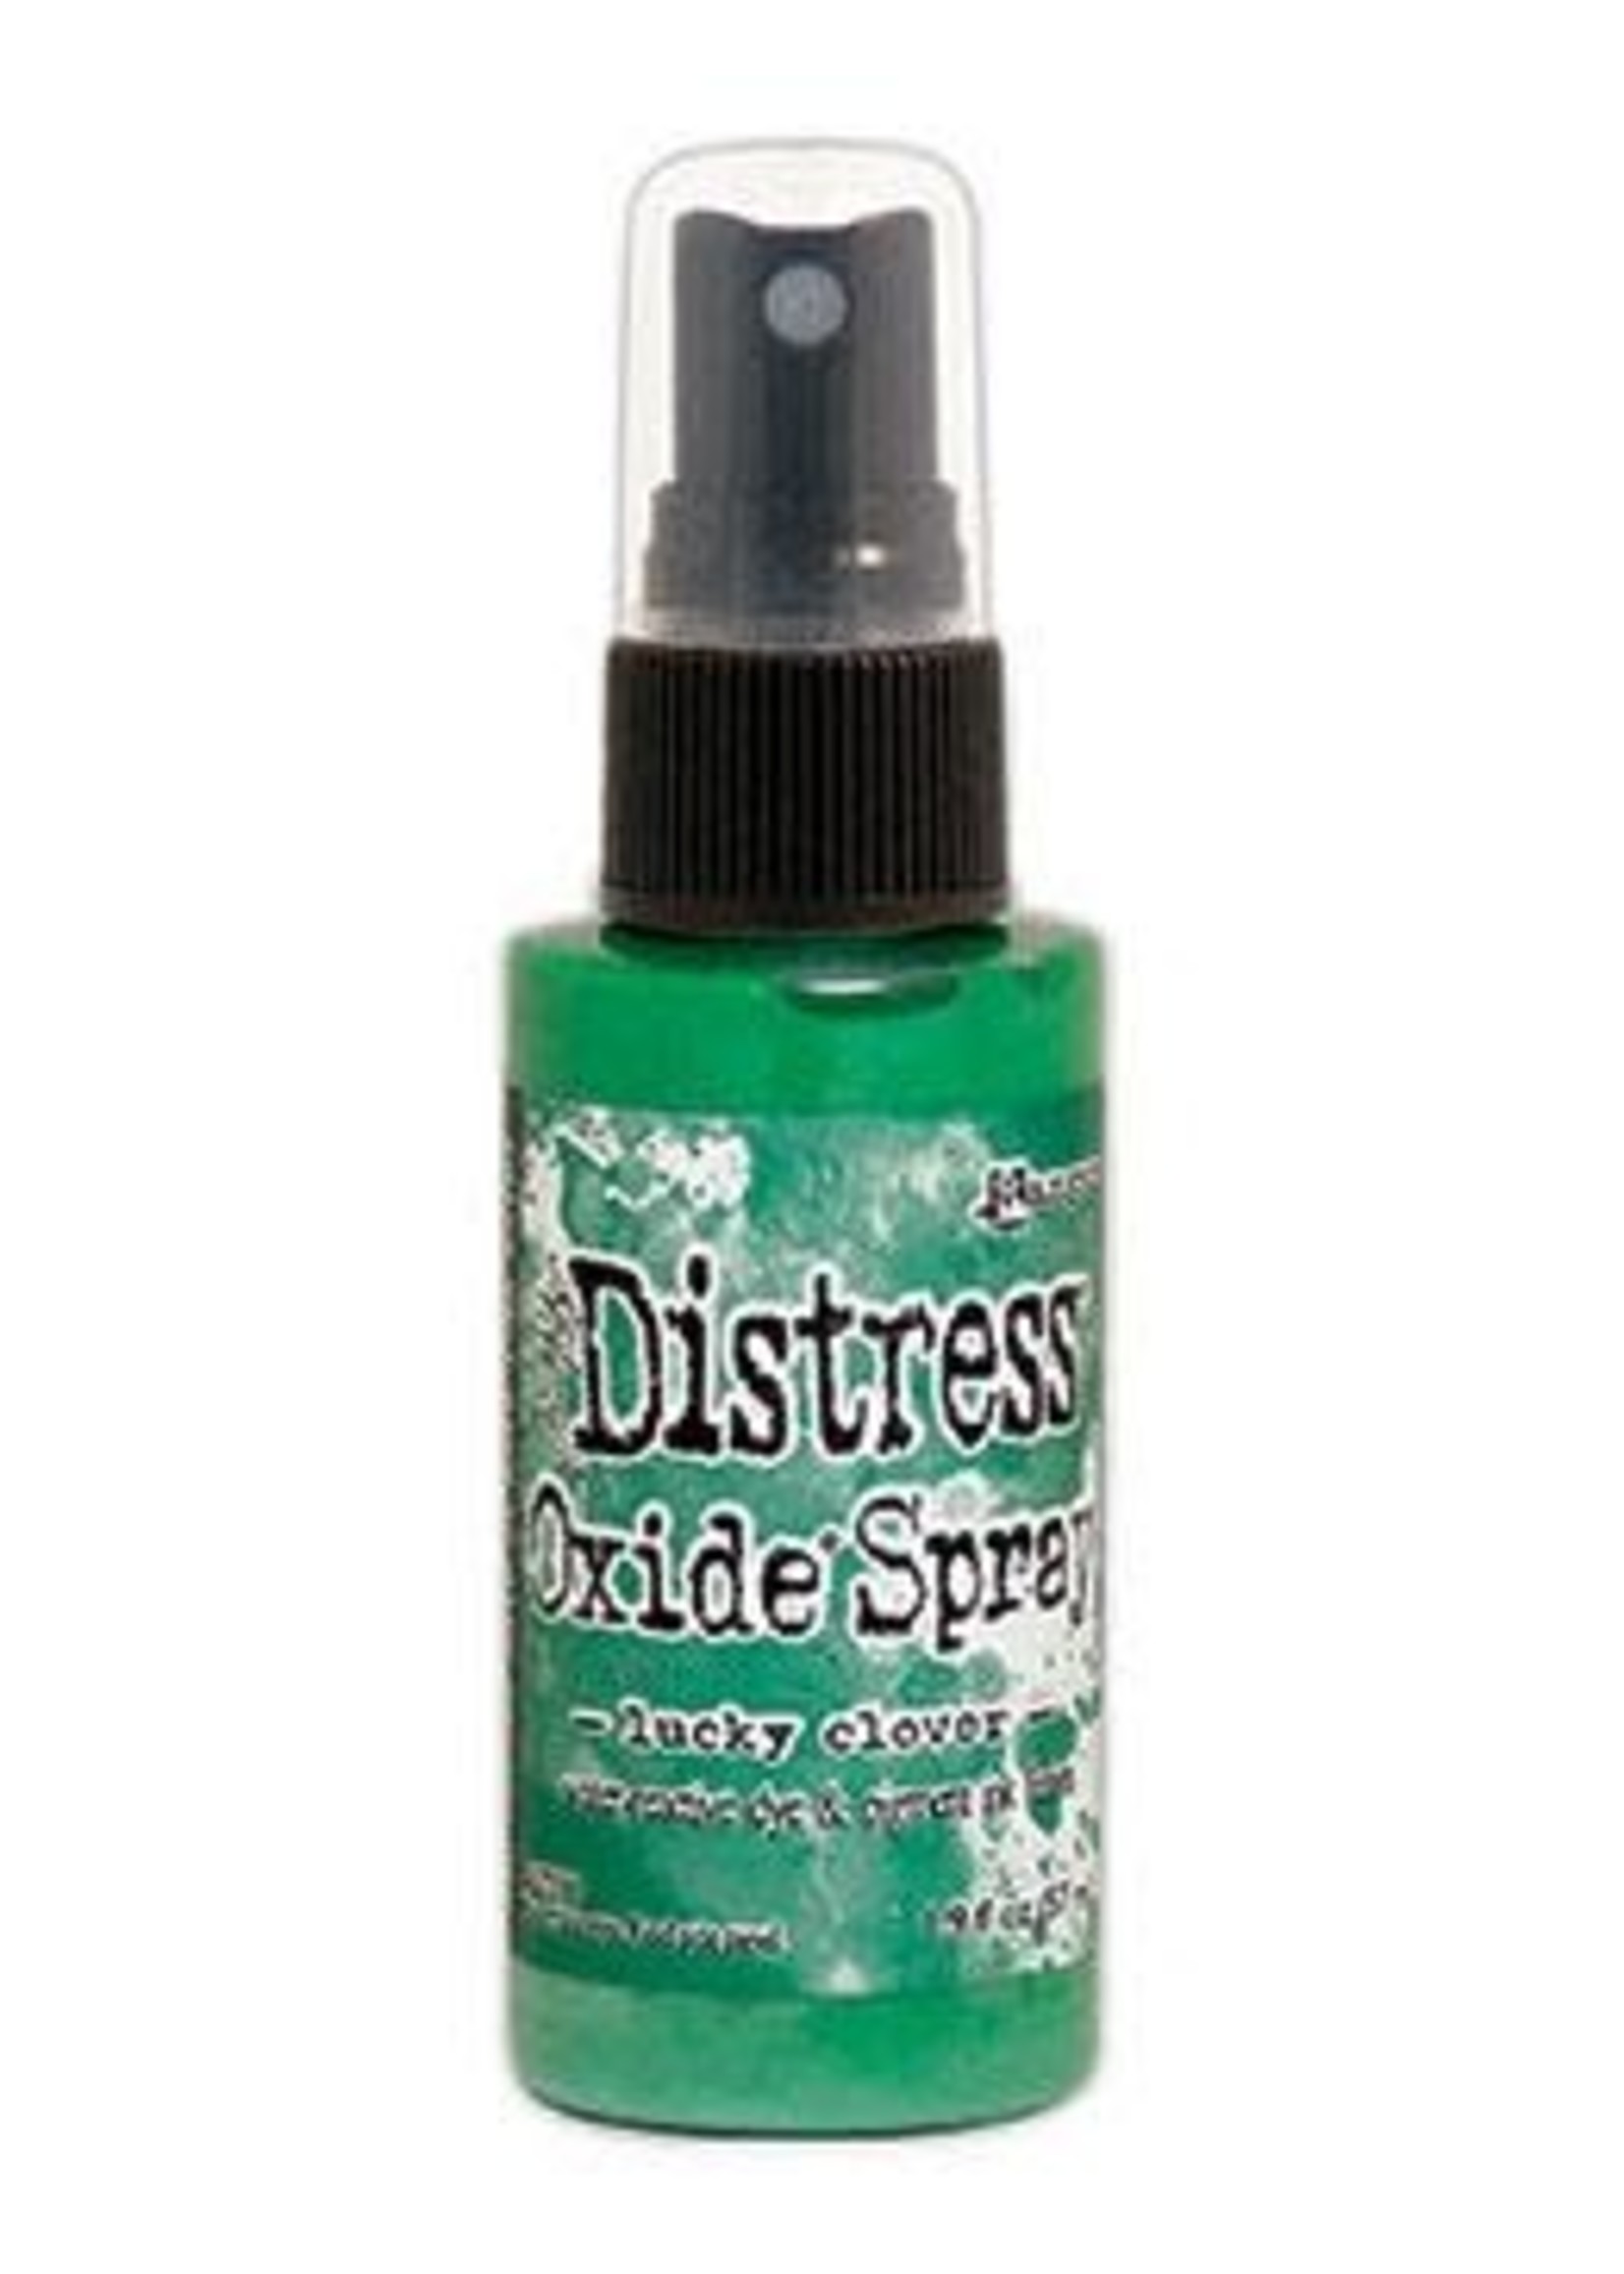 RANGER Distress Oxide Spray Lucky Clover